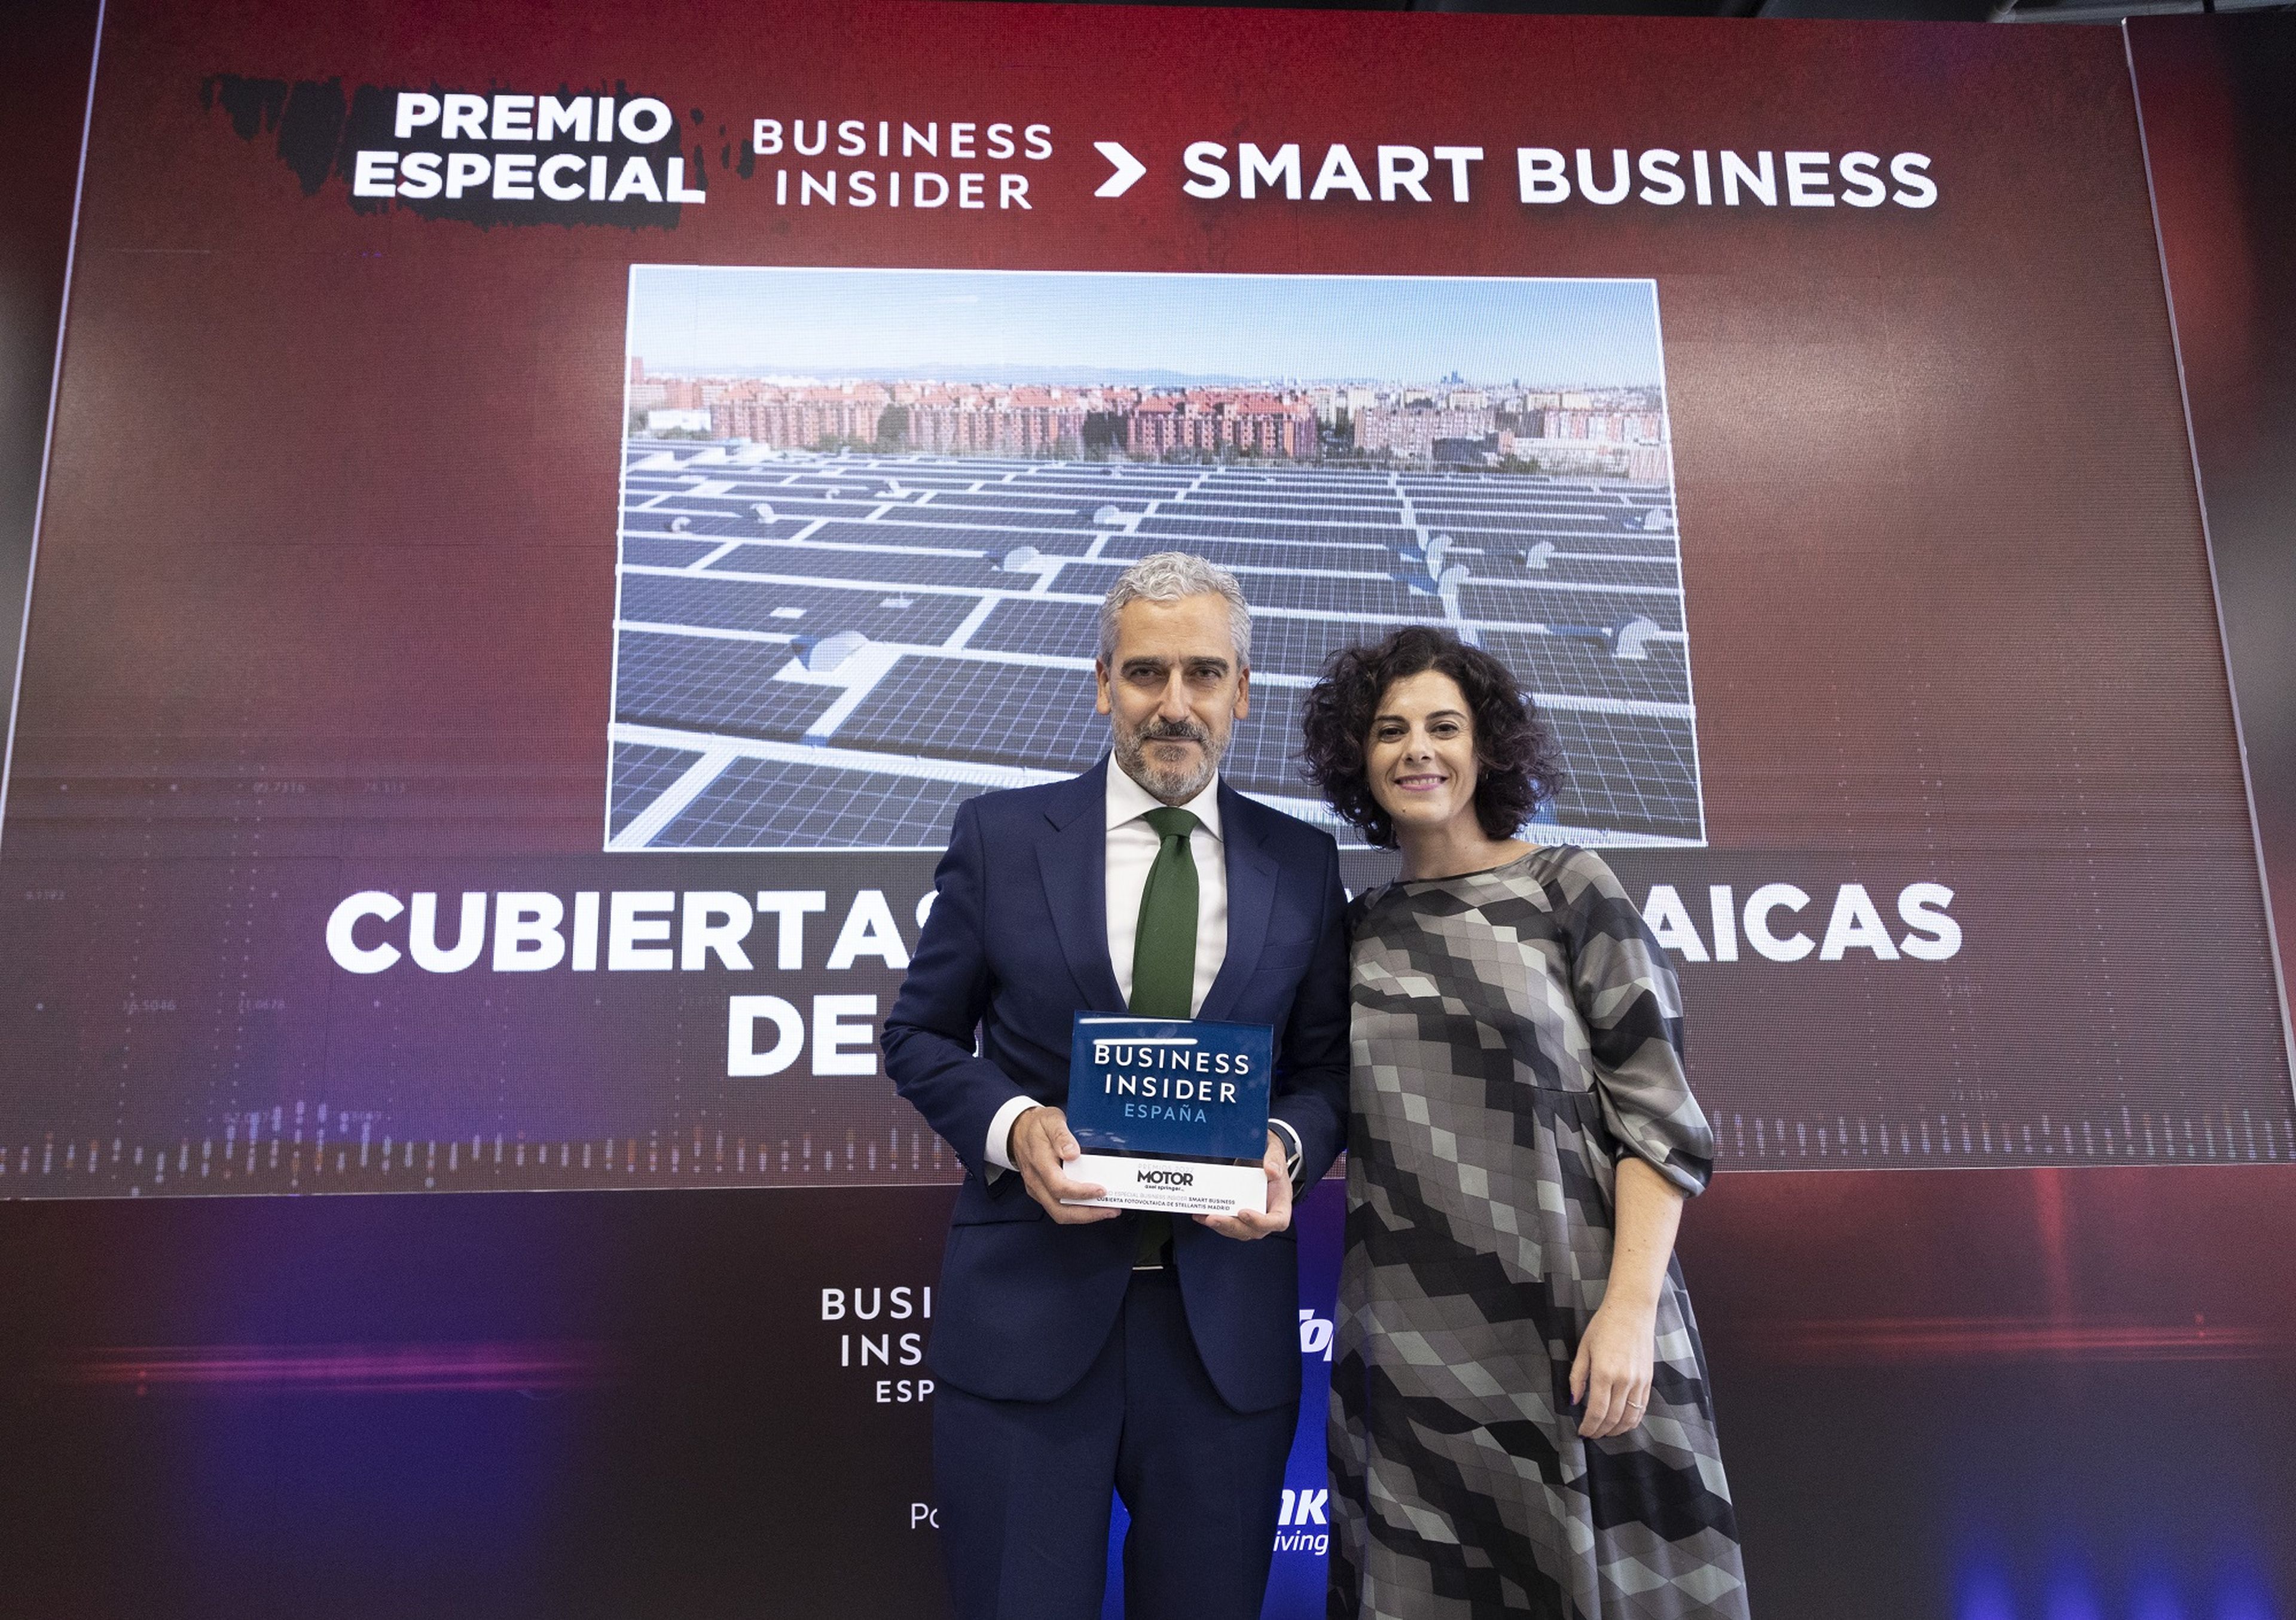 José Antonio León, director de Relaciones Institucionales de Stellantis Iberia, recoge el premio de manos de Yovanna Blanco, directora de 'Business Insider España'.